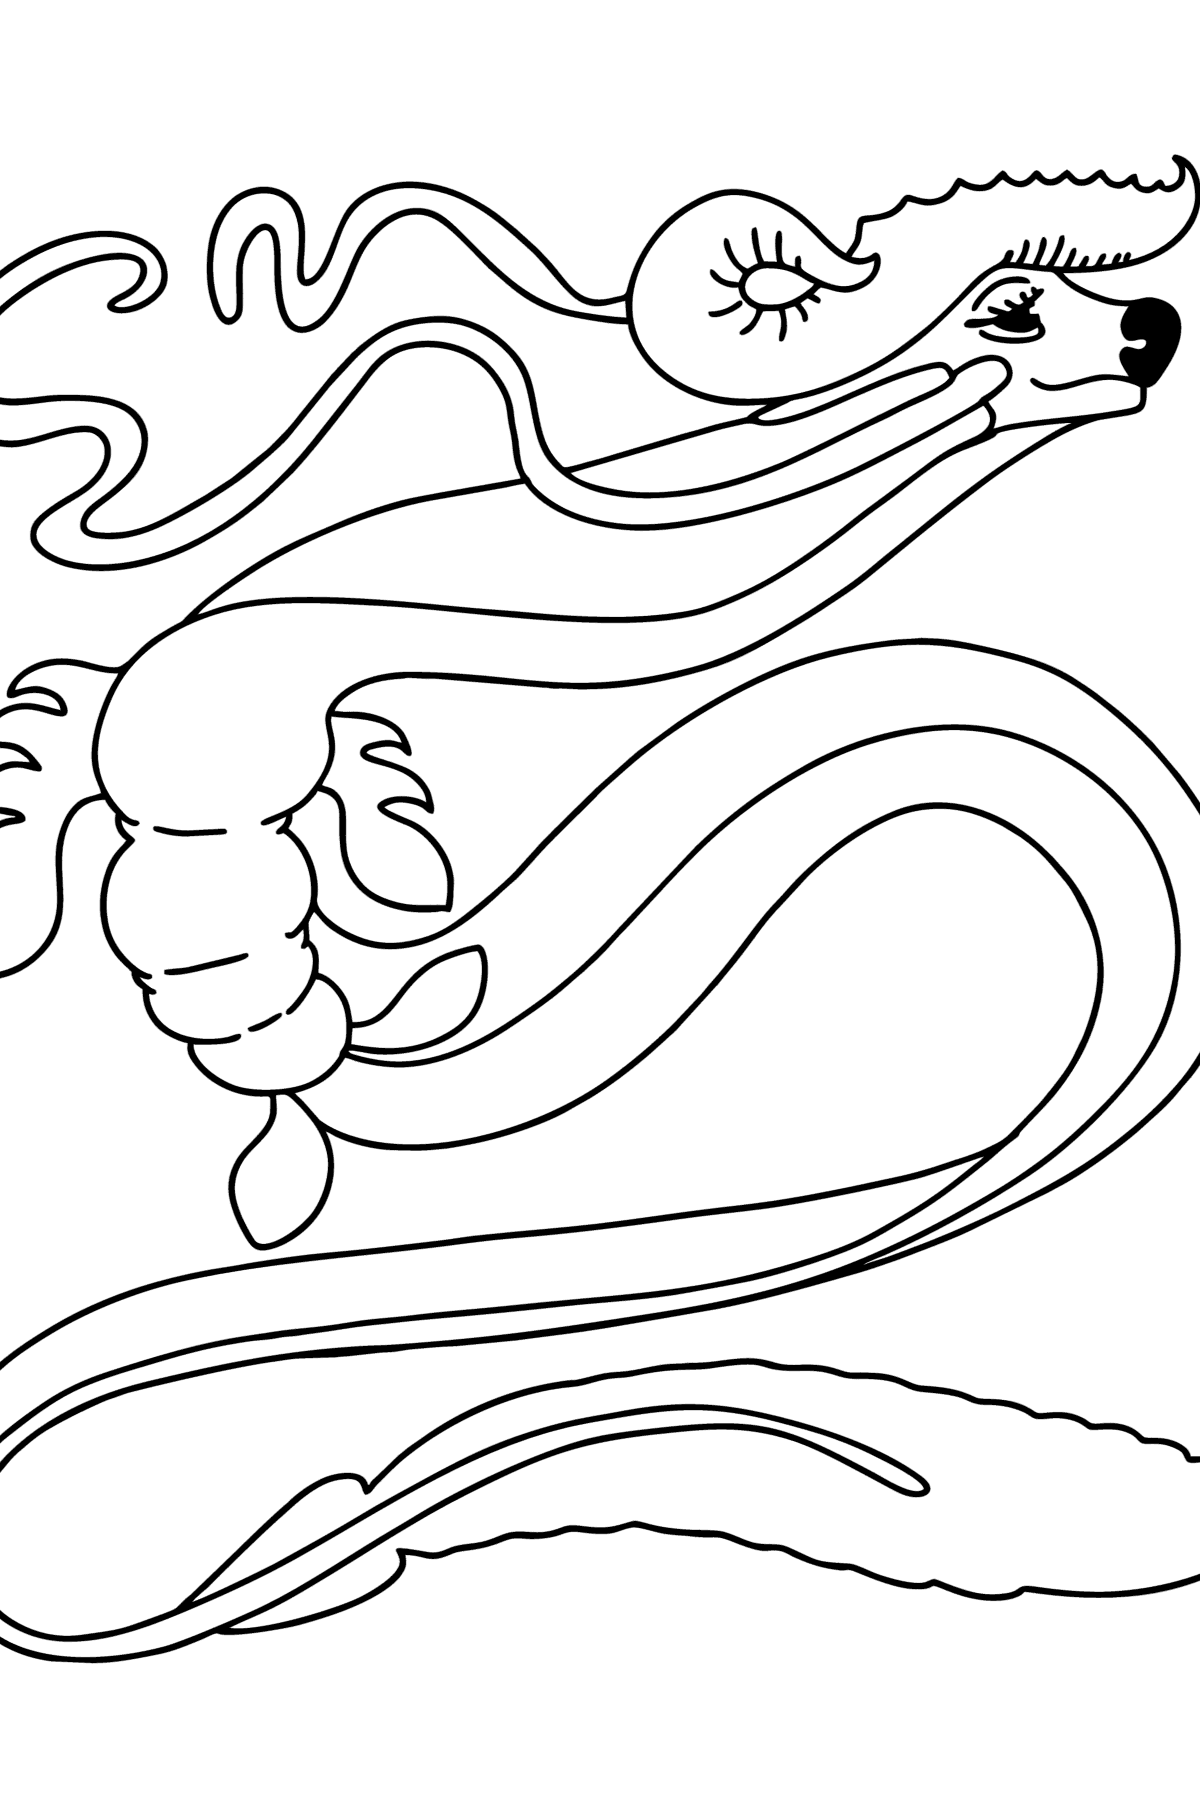 Kleurplaat slang draak - kleurplaten voor kinderen